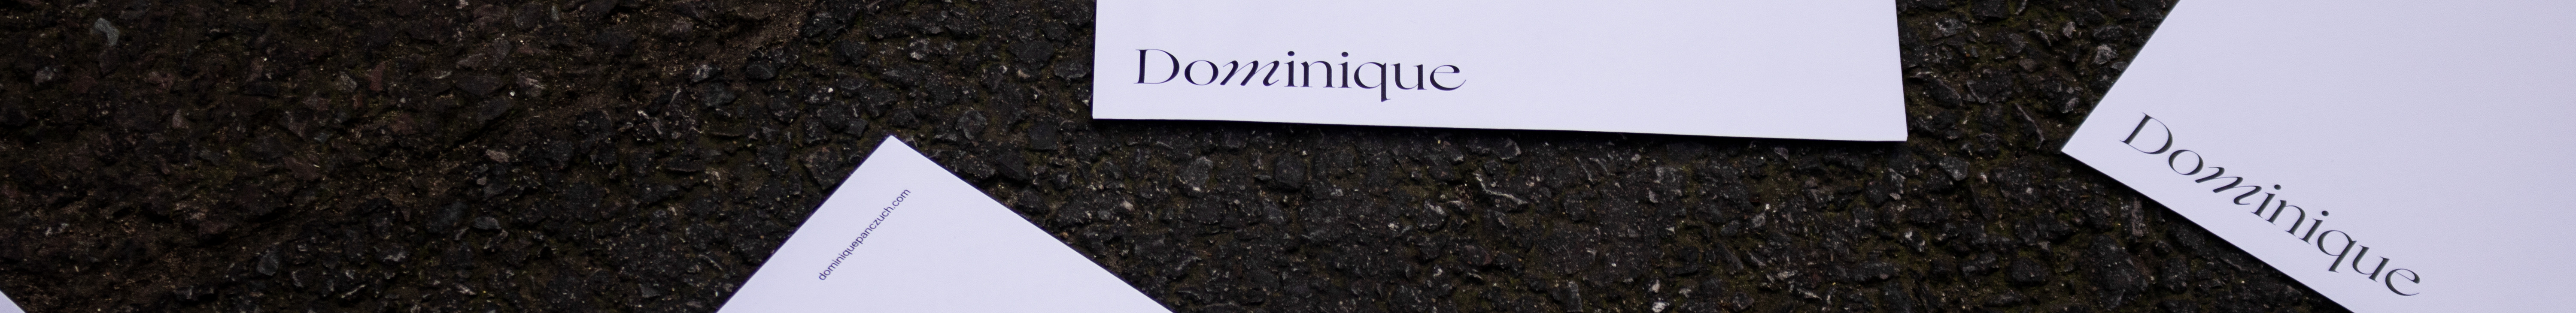 Dominique Panczuch's profile banner